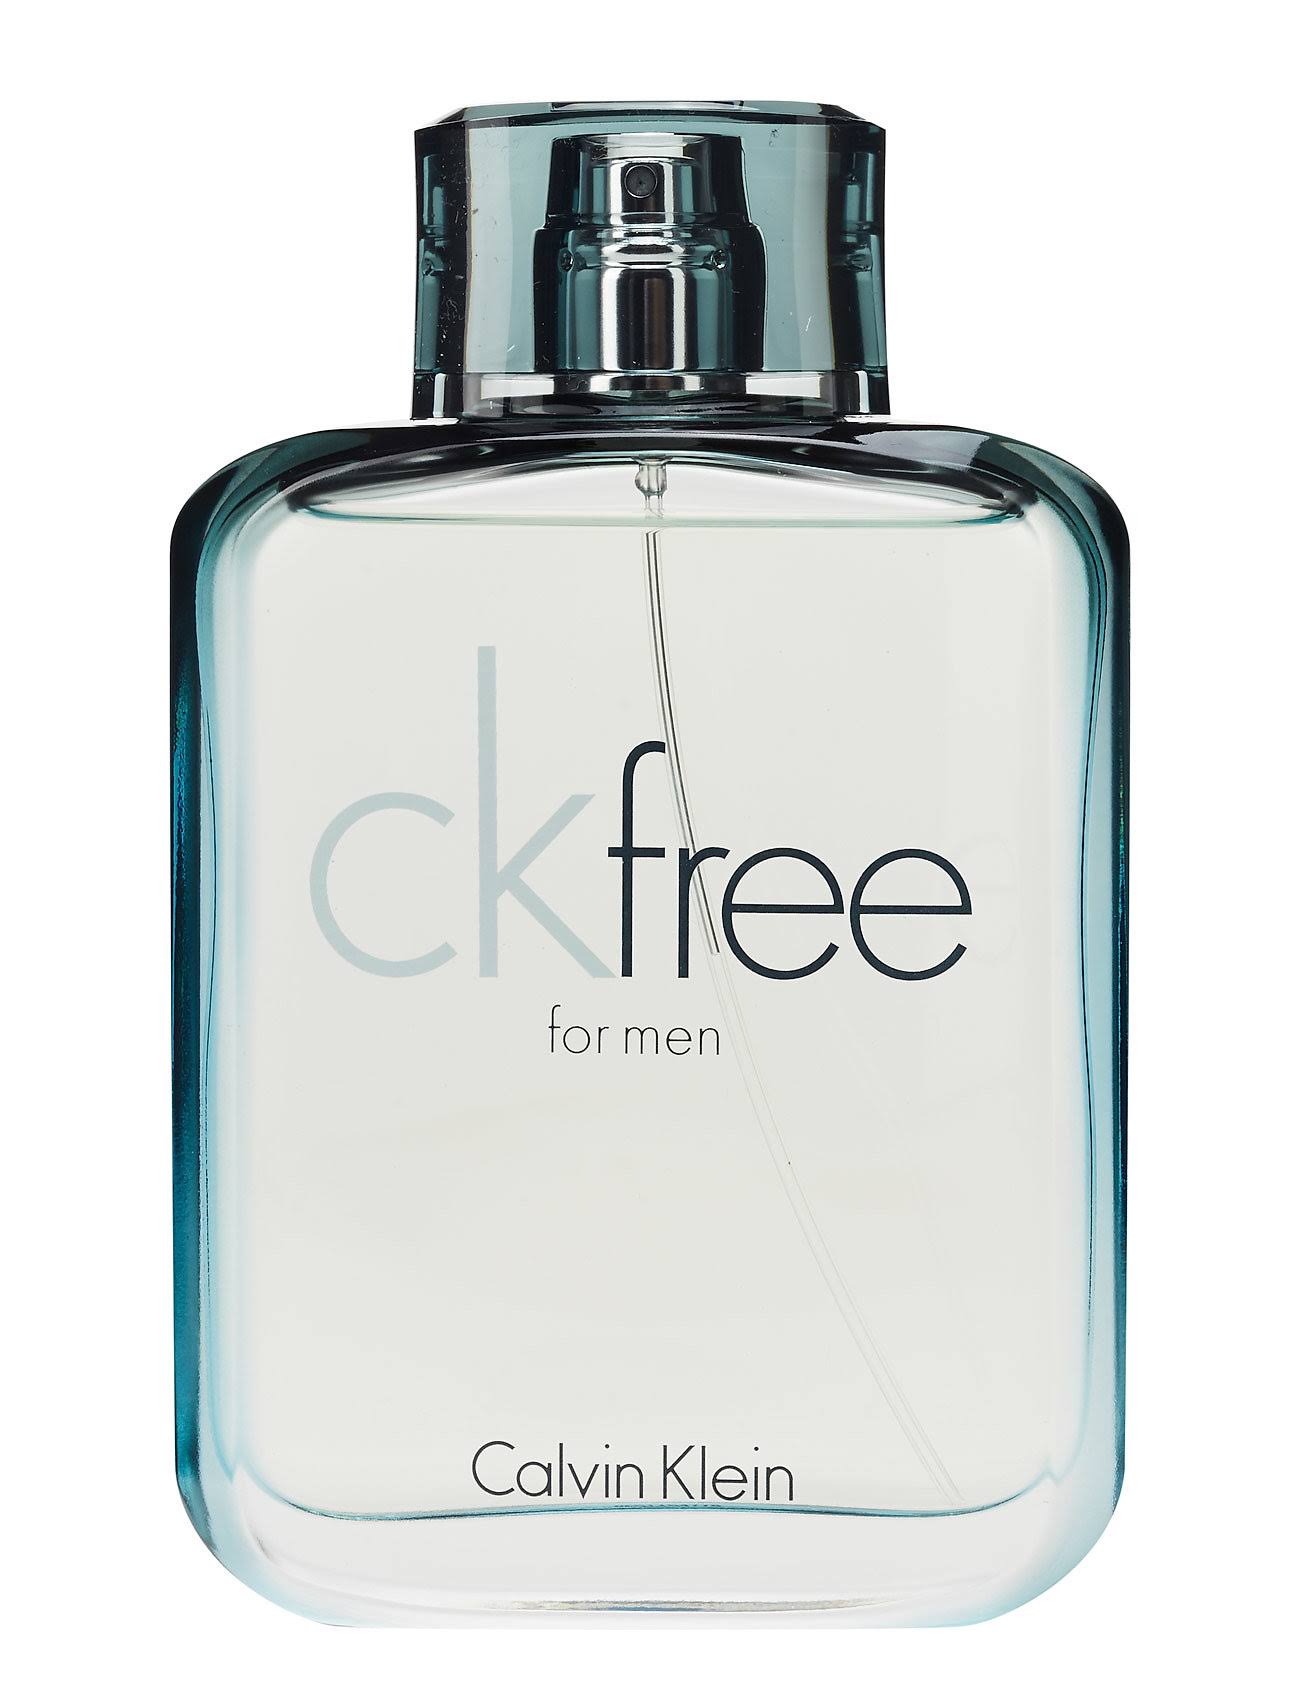 Calvin Klein CK Free for Men Eau de Toilette - 100ml